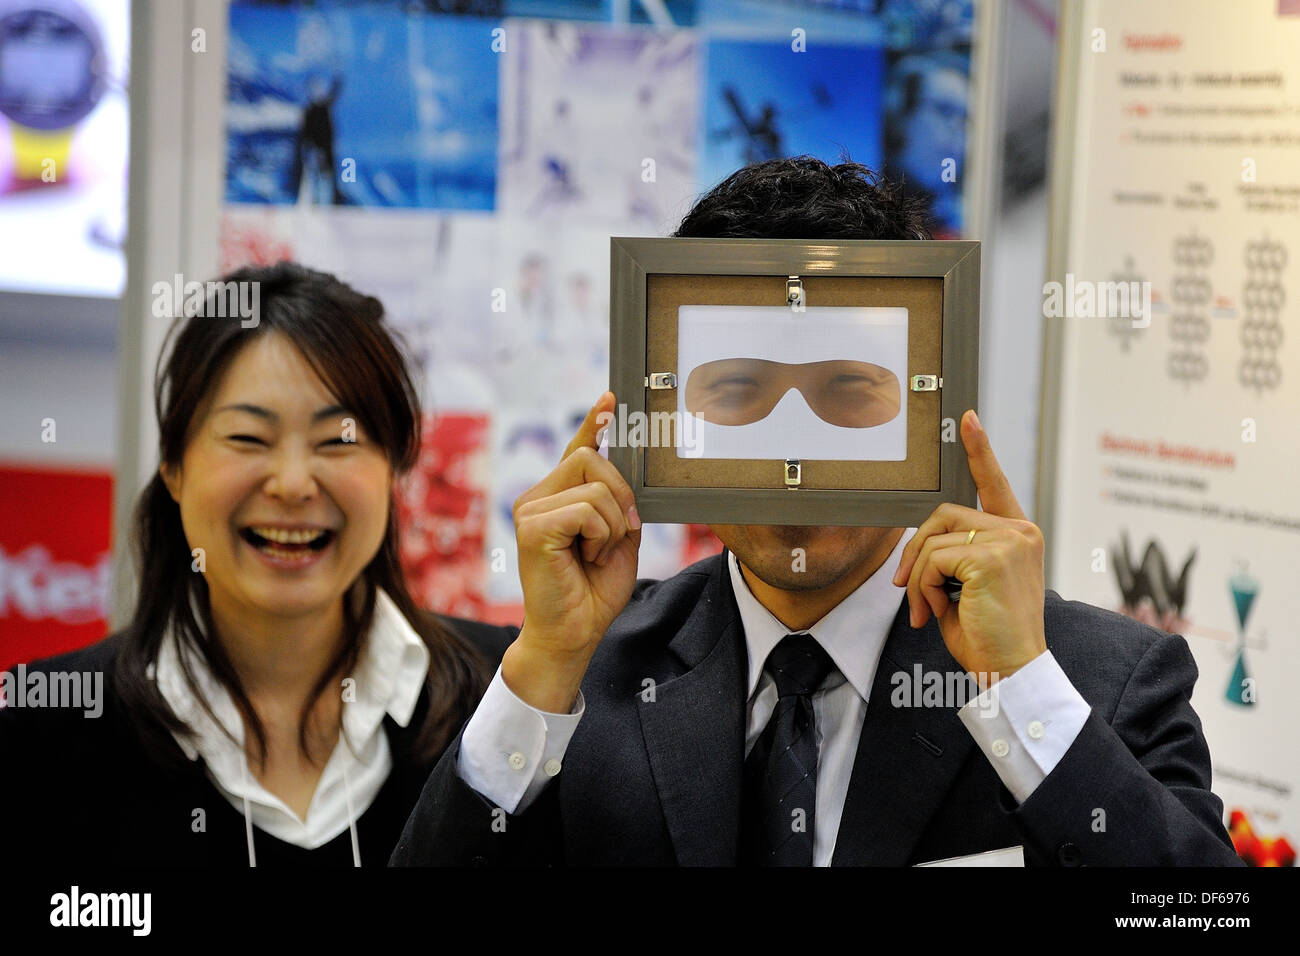 Homme sourit à travers la vision masque au salon Nanotech Japon tandis que les femmes collègue rit Banque D'Images